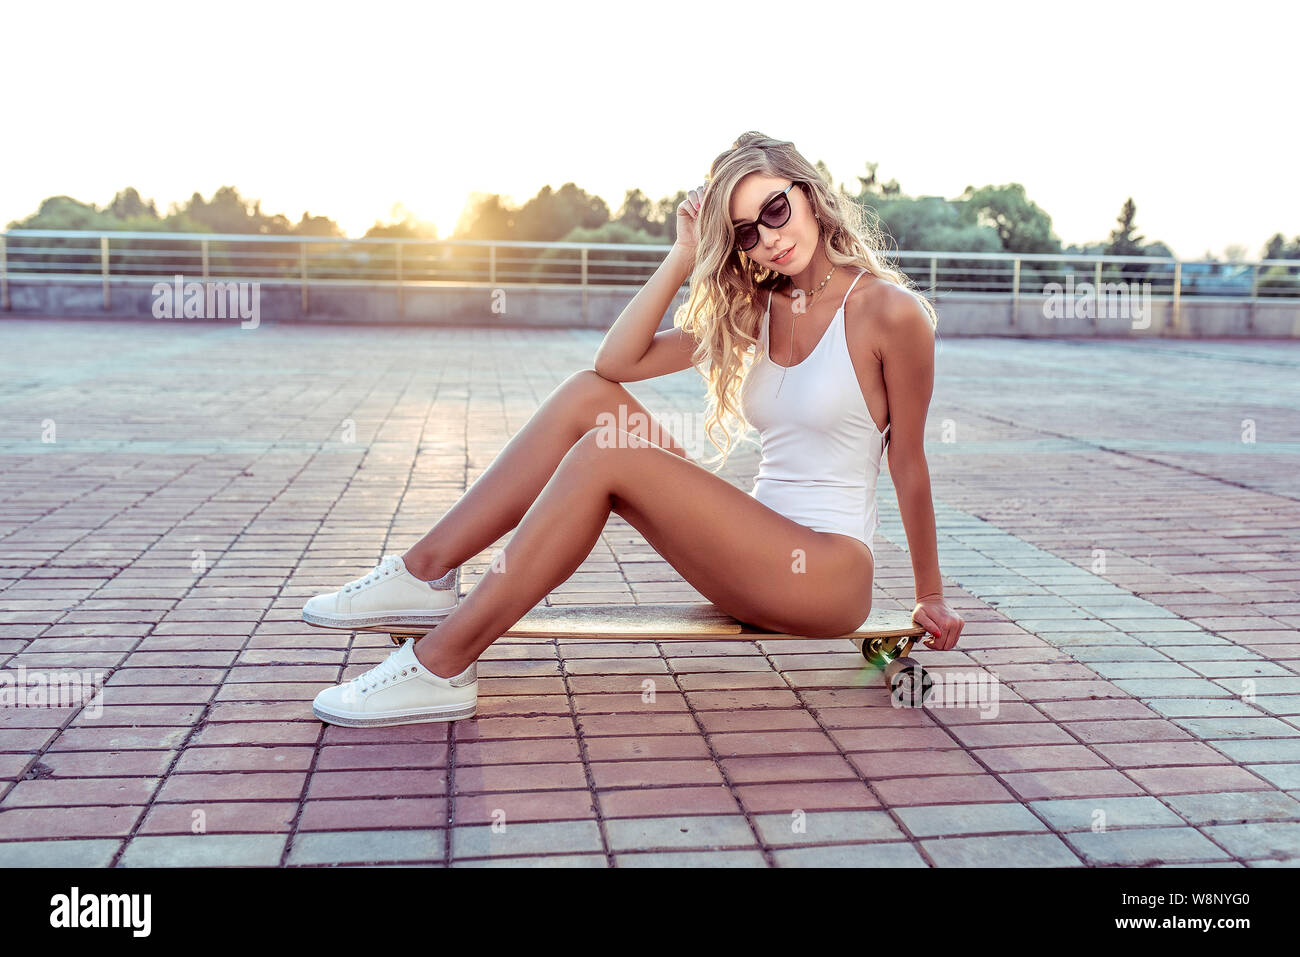 Mädchen im Sommer Stadt, sitzend Longboard Skateboard, lange Haare,  Sonnenbrille, Weiße Strampler Badeanzug Turnschuhe. Konzept modisch  stilvolle Frau Stockfotografie - Alamy